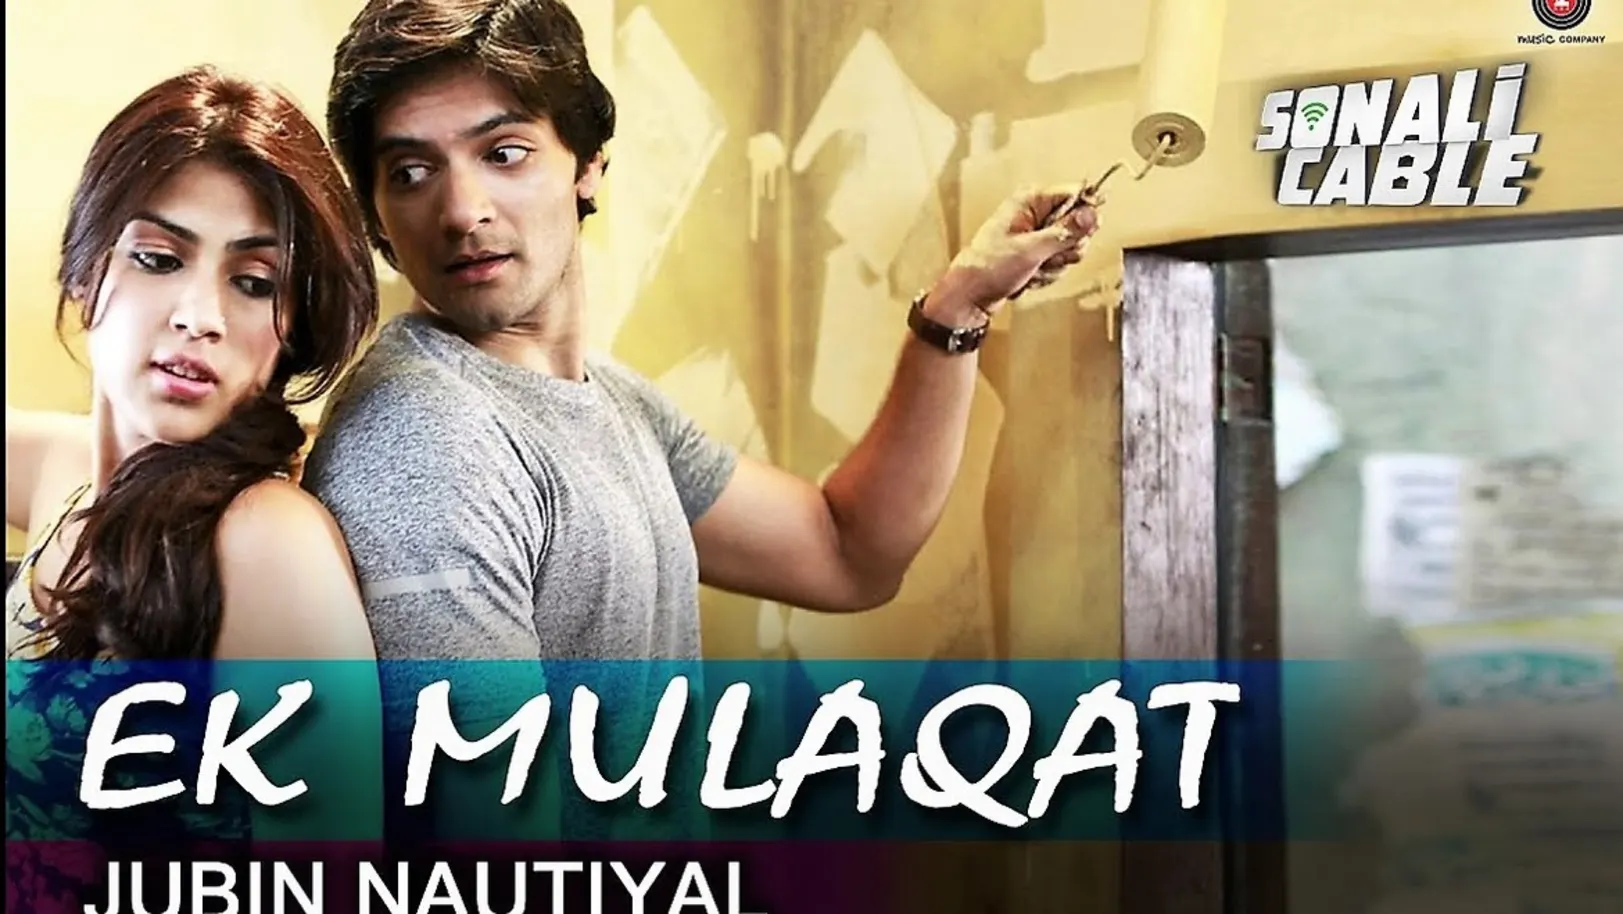 Ek Mulaqat - Sonali Cable | Ali Fazal | Rhea Chakraborty 